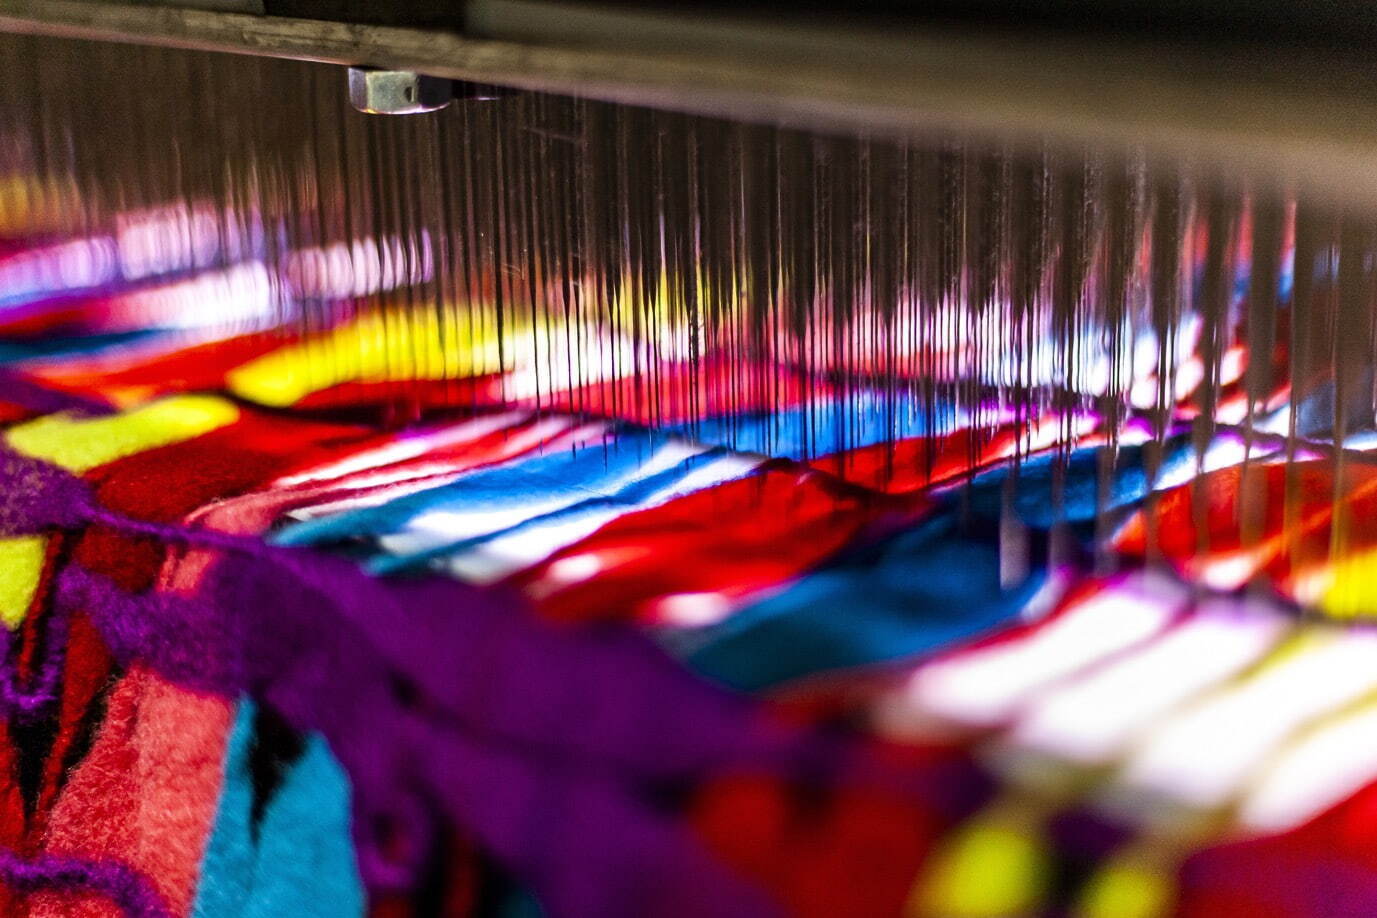 《糸乱れ筋》に用いられるニードルパンチ機(部分)
展示風景：「Sudo Reiko: Making NUNO Textiles」CHAT (Centre for Heritage, Arts and Textile) Hong Kong、2019-2020
©CHAT (Centre for Heritage, Arts and Textile) Hong Kong